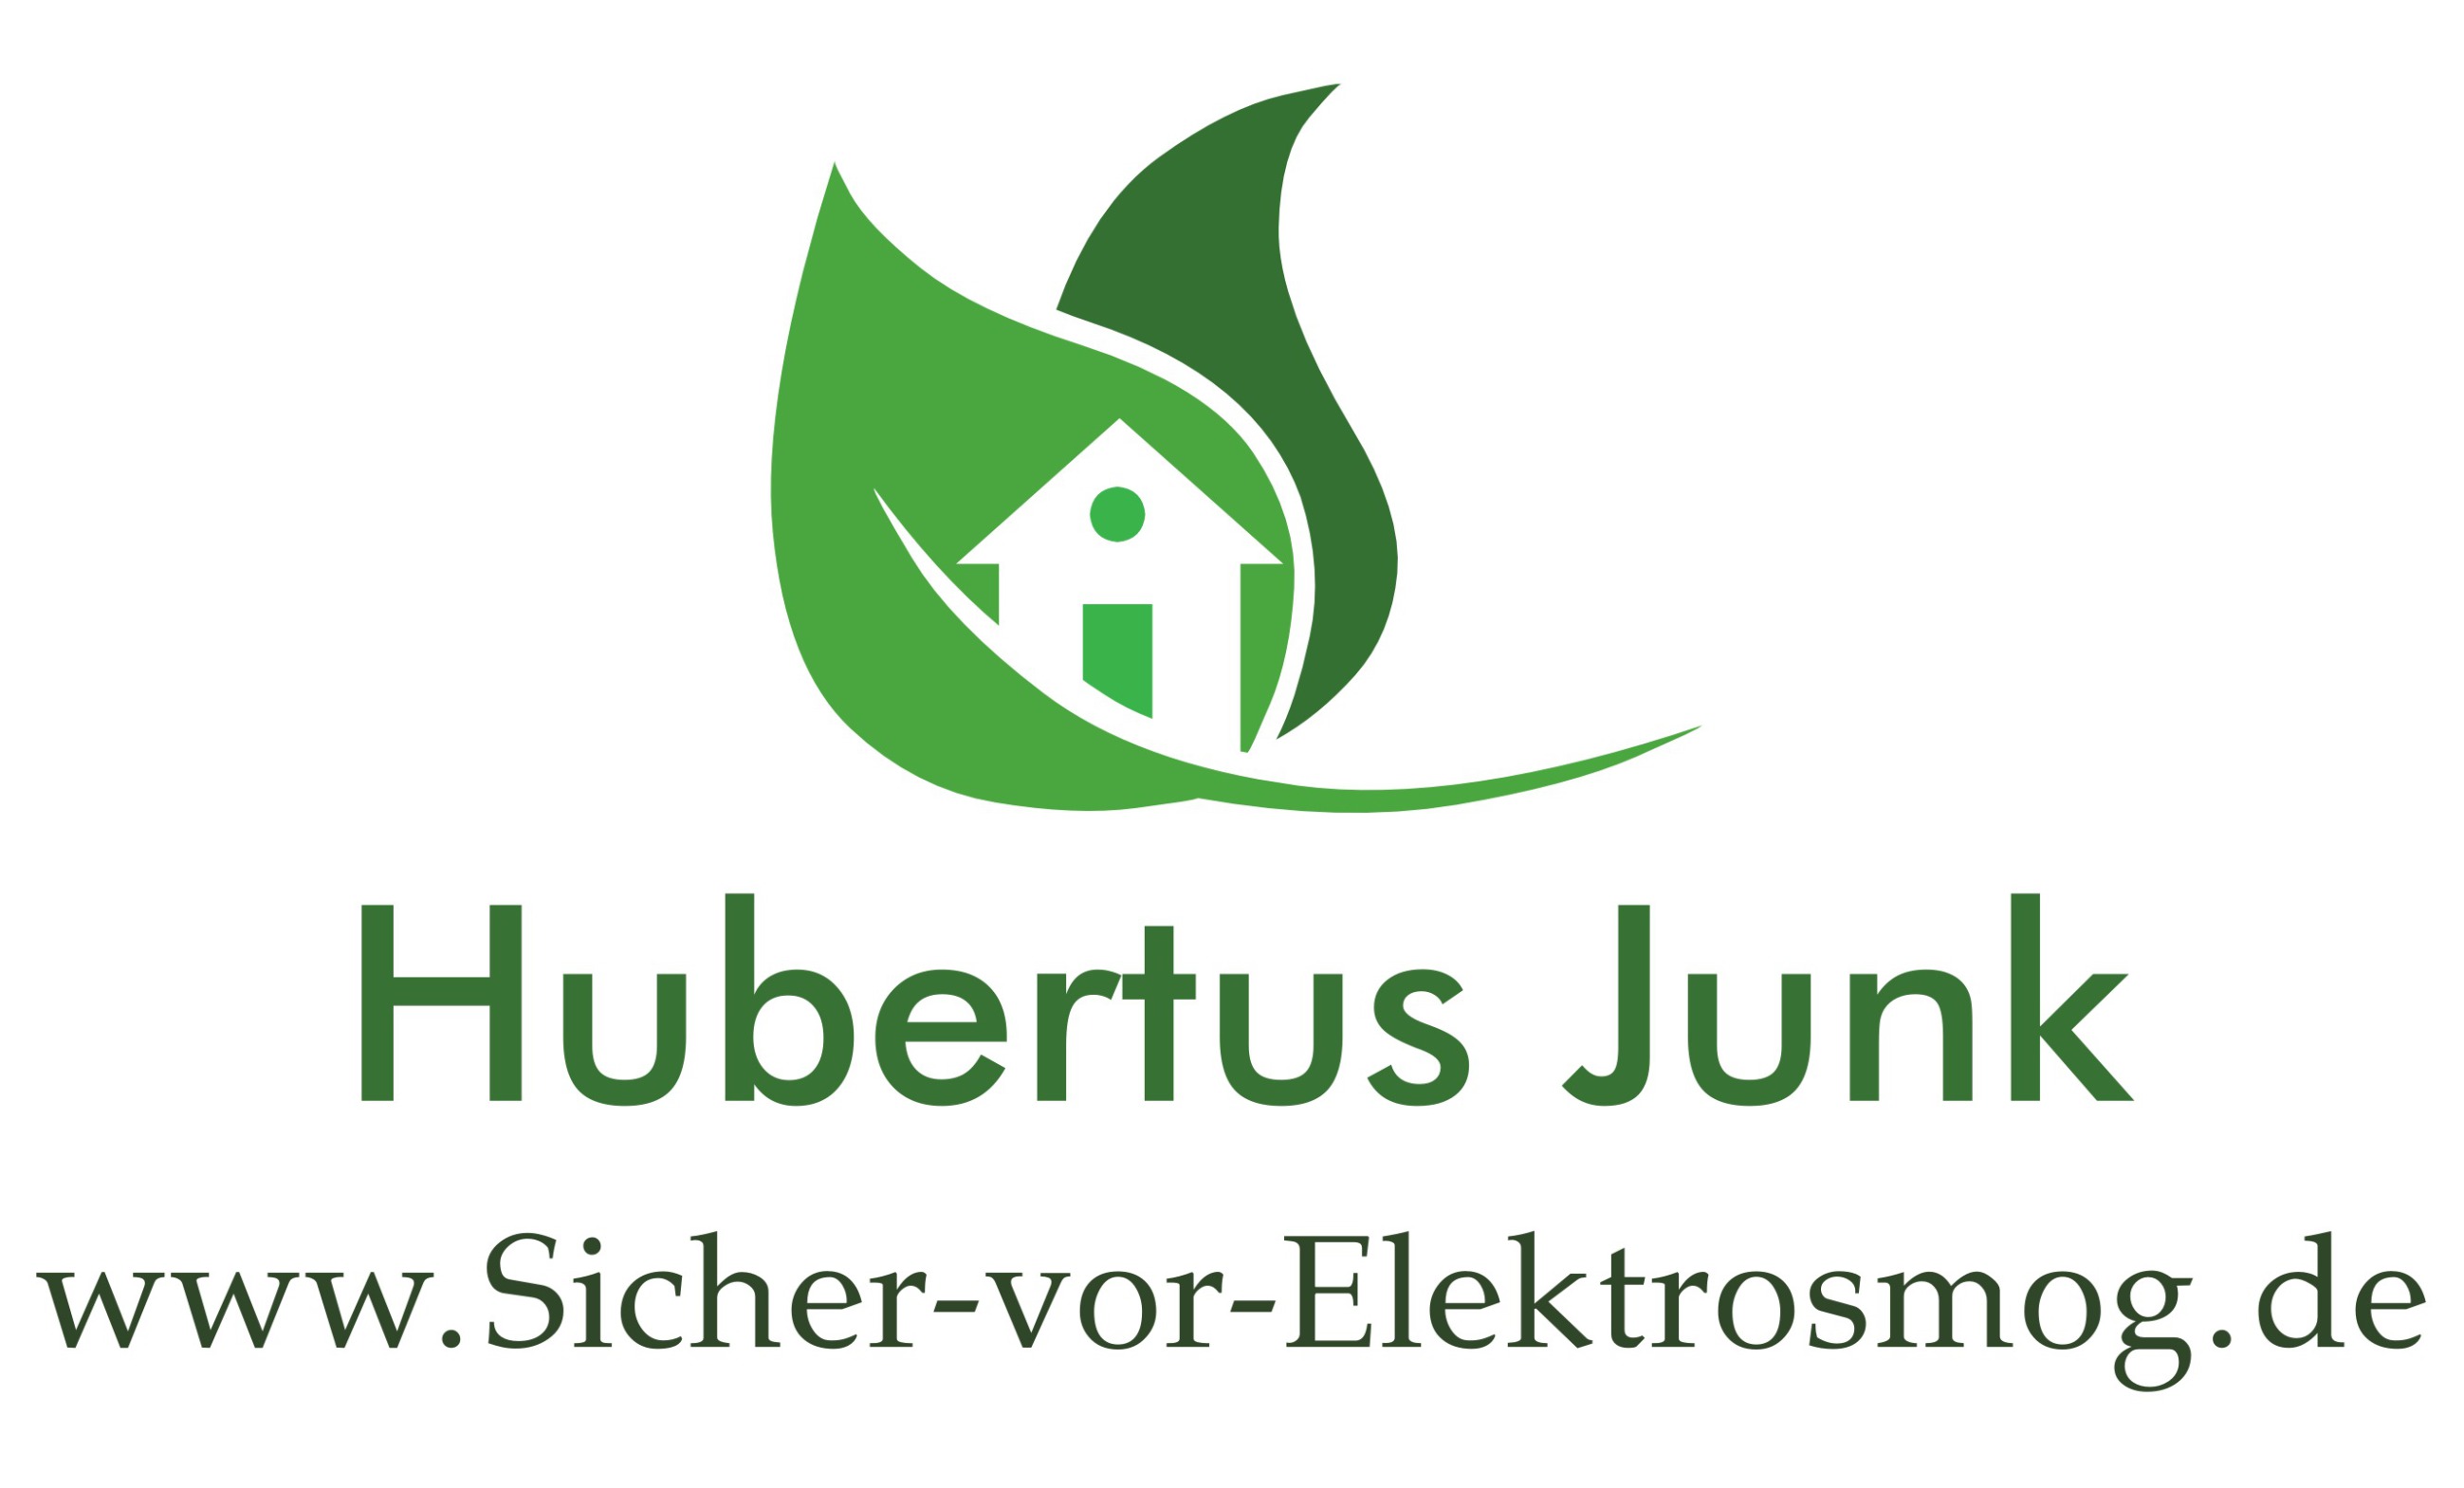 Hubertus Junk - www.Sicher-vor-Elektrosmog.de